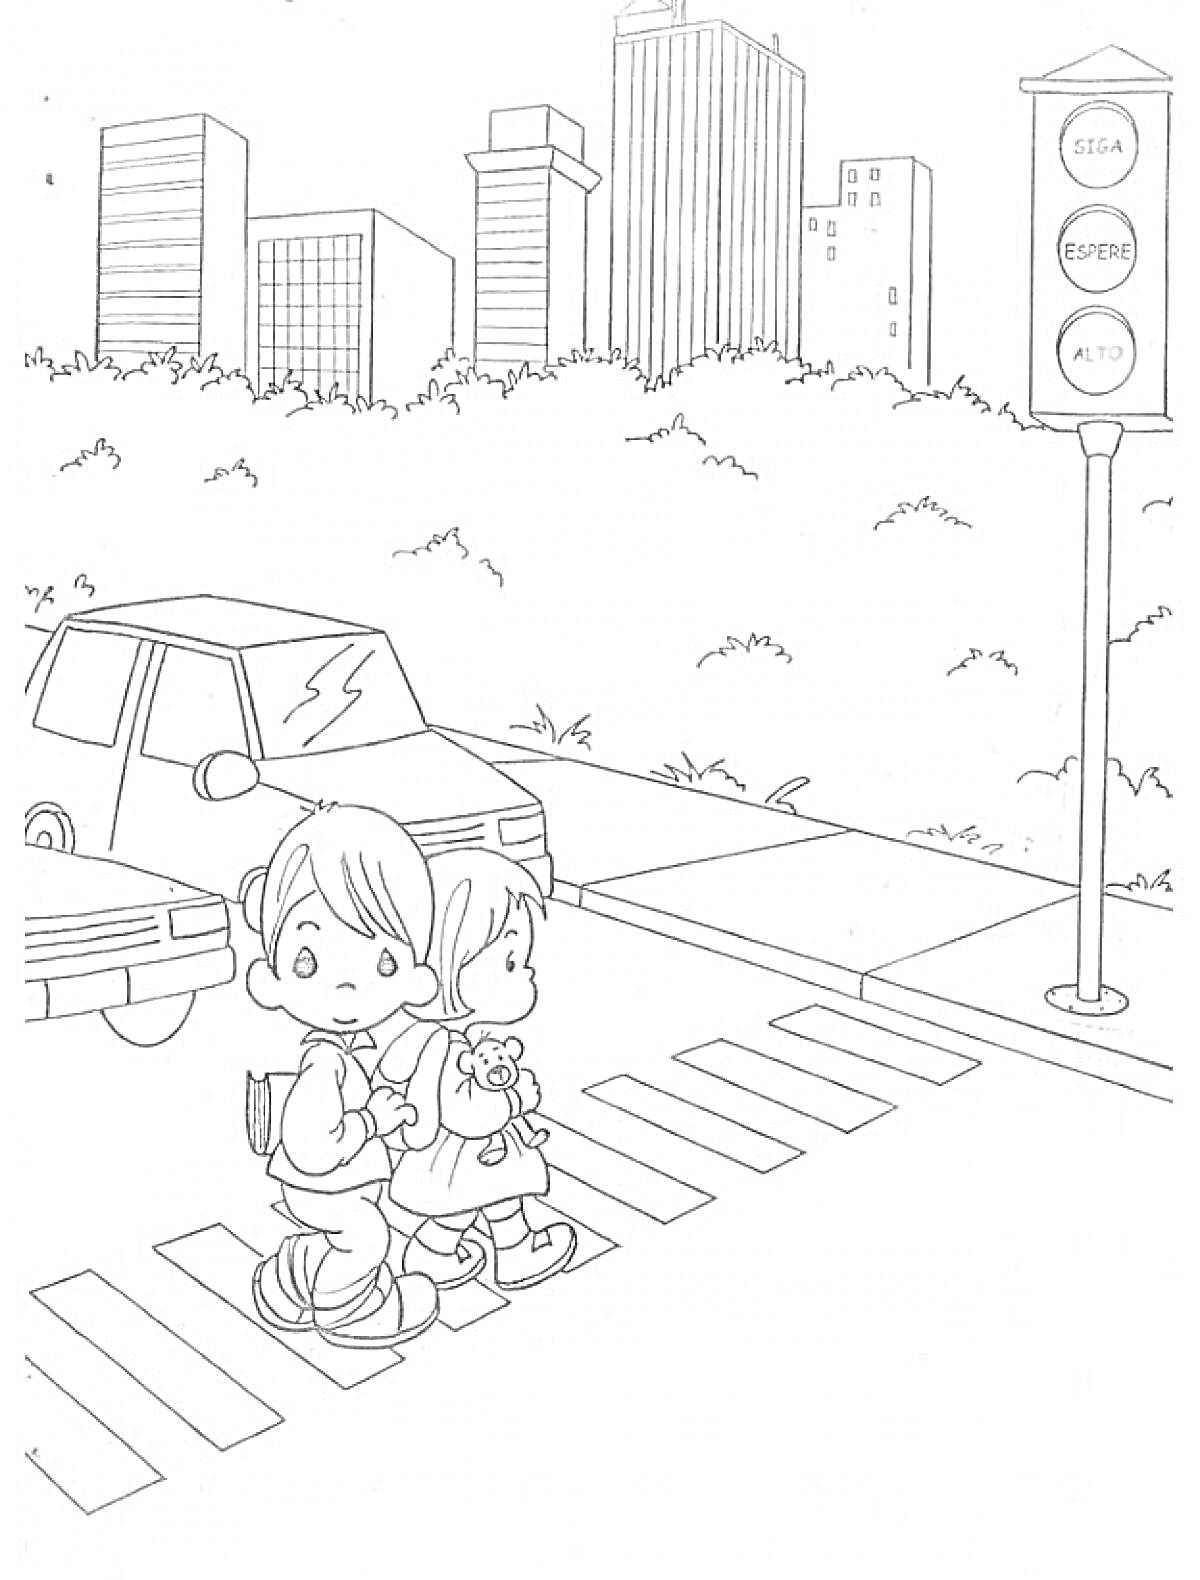 Дети переходят дорогу по пешеходному переходу на фоне городской улицы с автомобилями и светофором